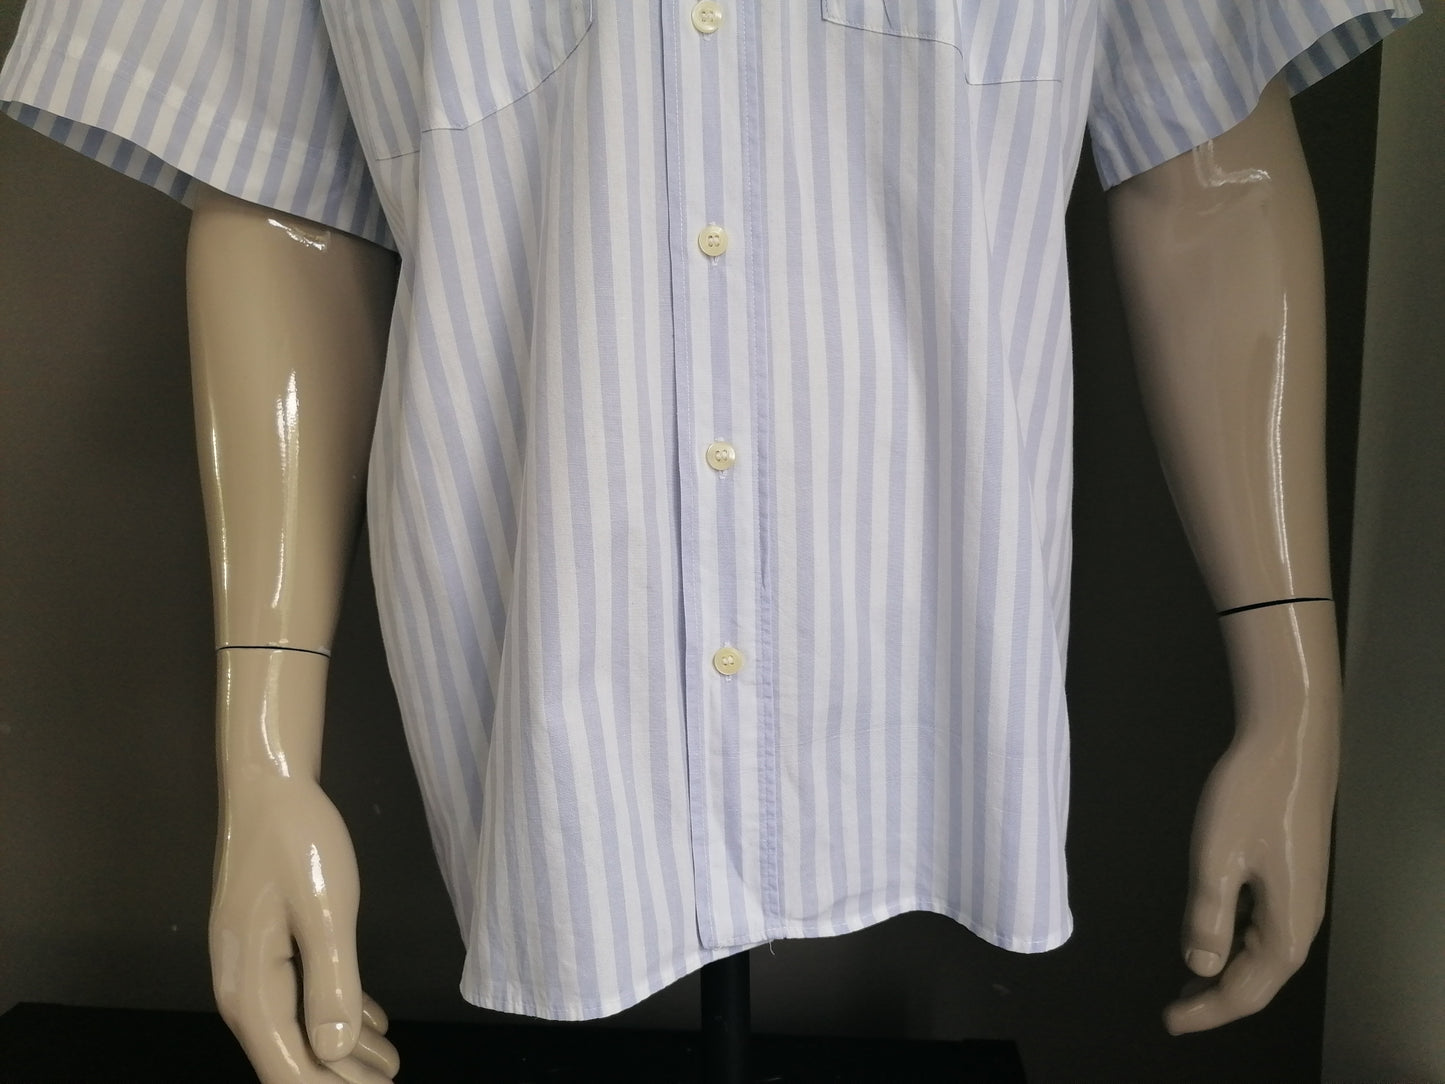 Camisa de manga corta vintage. Blanco azul con acento de gafas de sol bordadas. Tamaño XL.